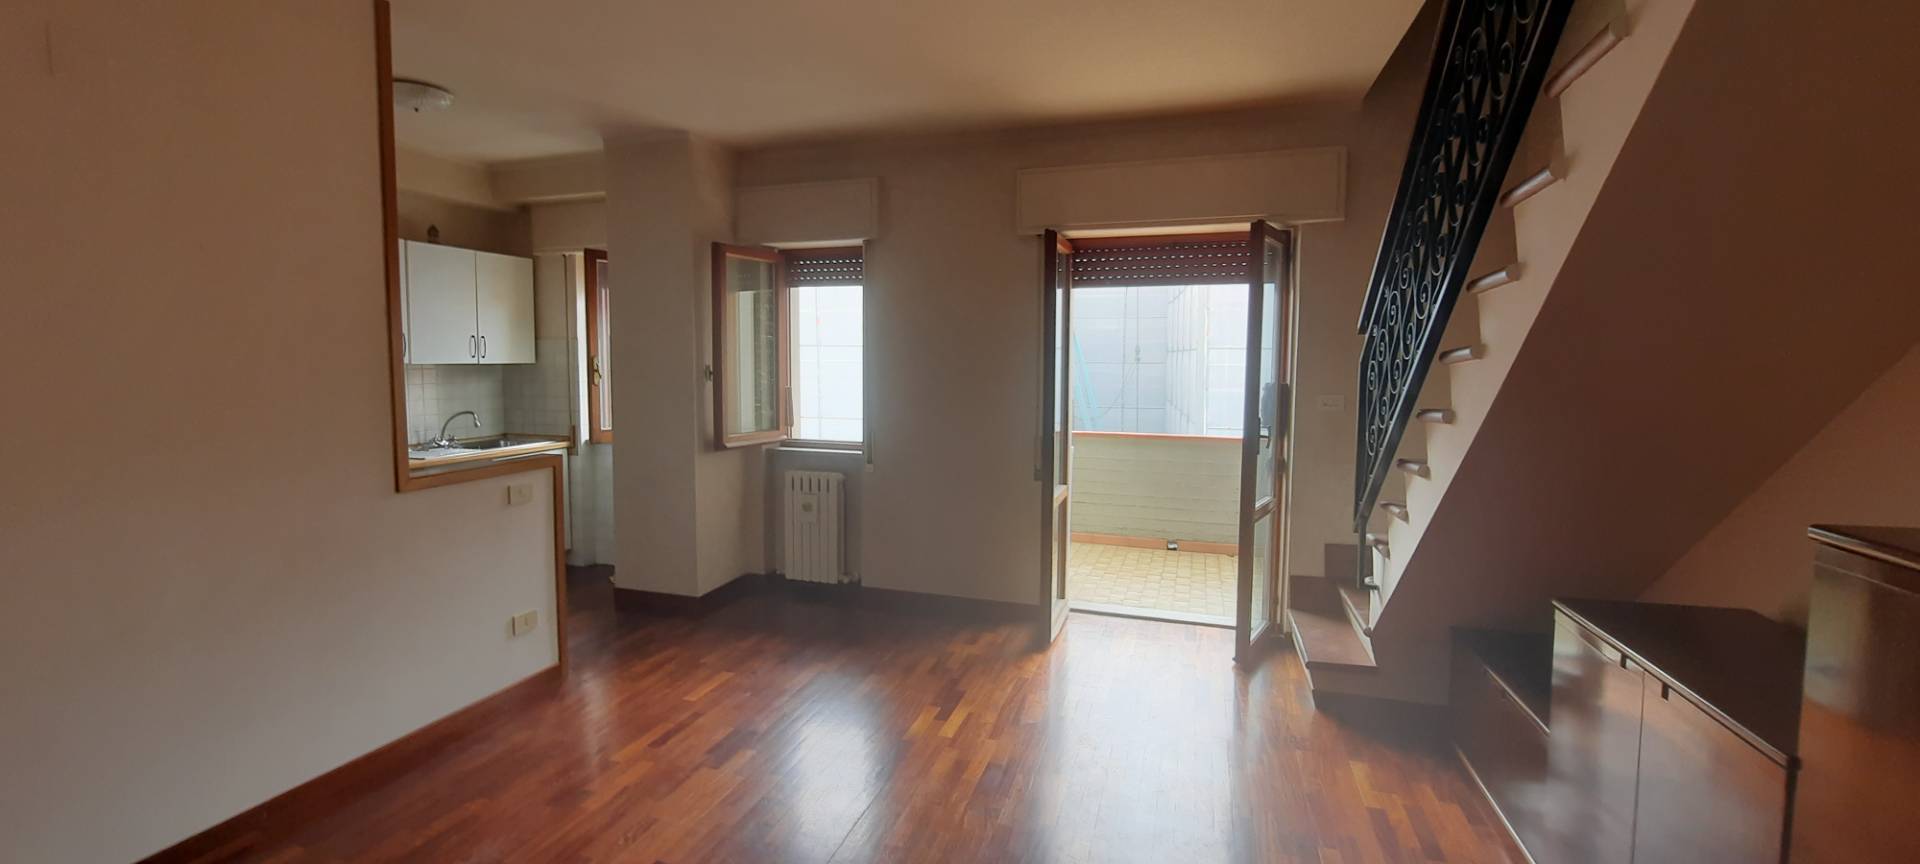 Appartamento in vendita a Ascoli Piceno, 5 locali, prezzo € 180.000 | PortaleAgenzieImmobiliari.it